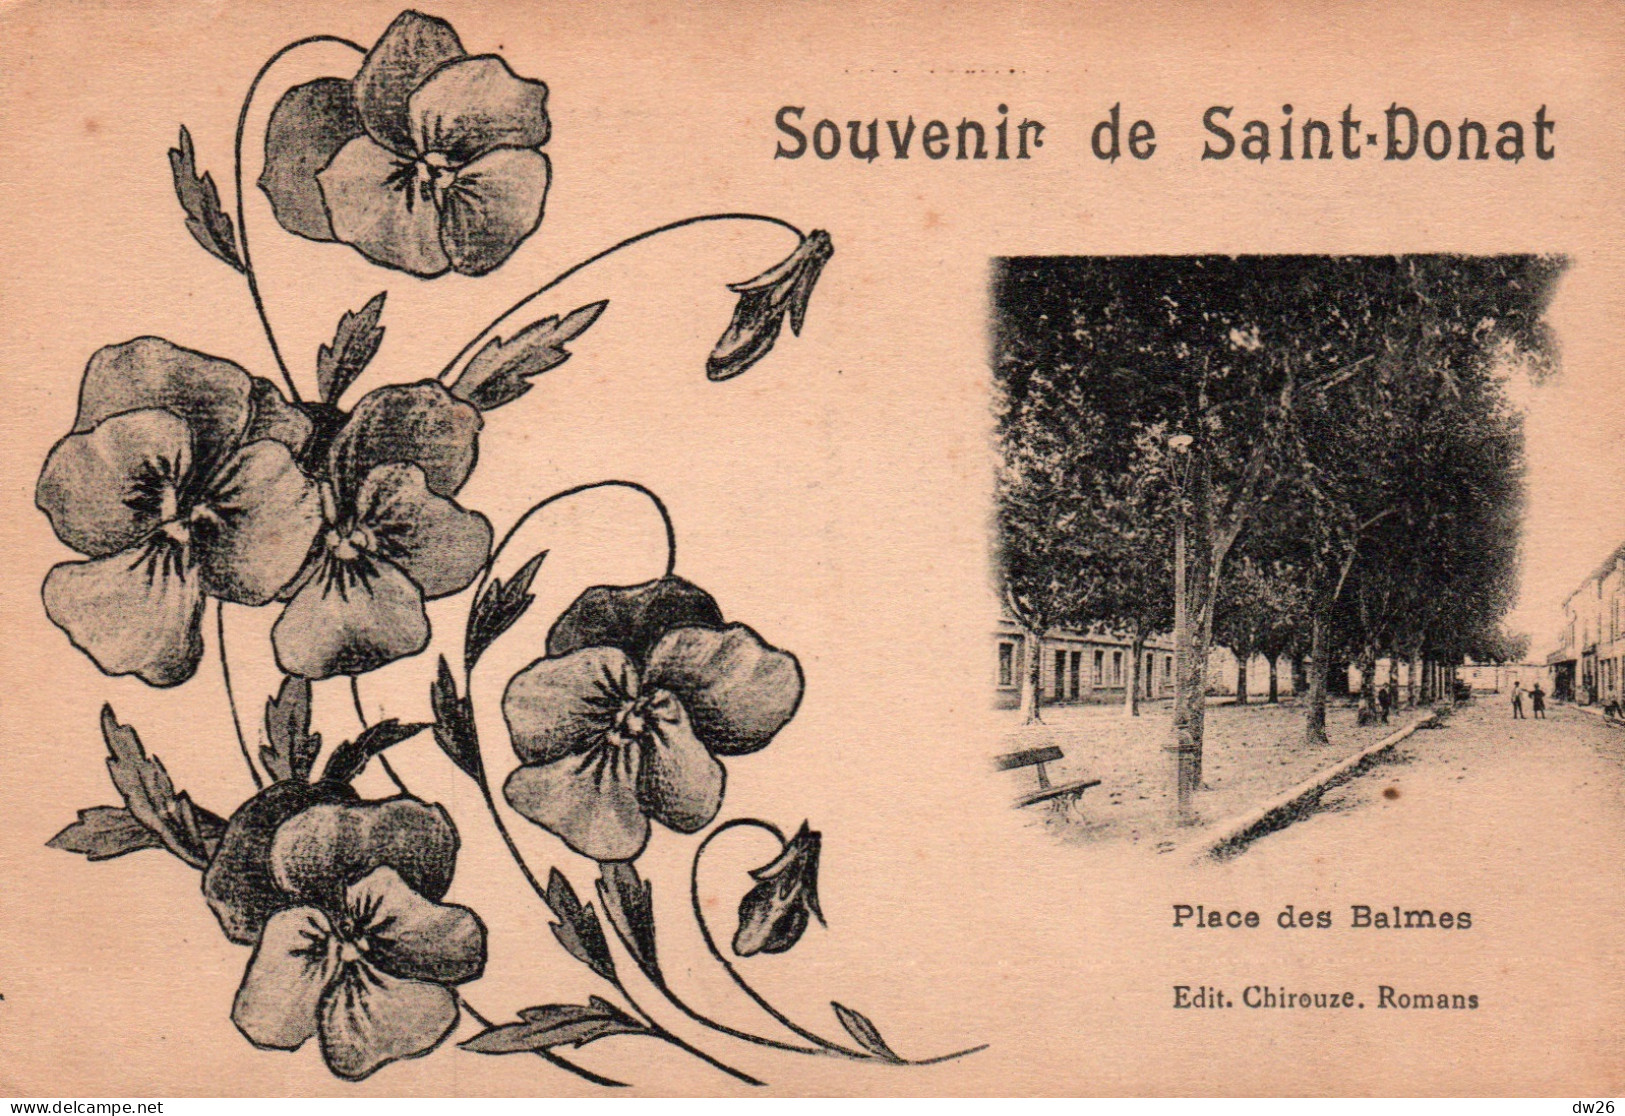 Souvenir De St Saint-Donat - Place Des Balles - Edition Chirouze - Souvenir De...